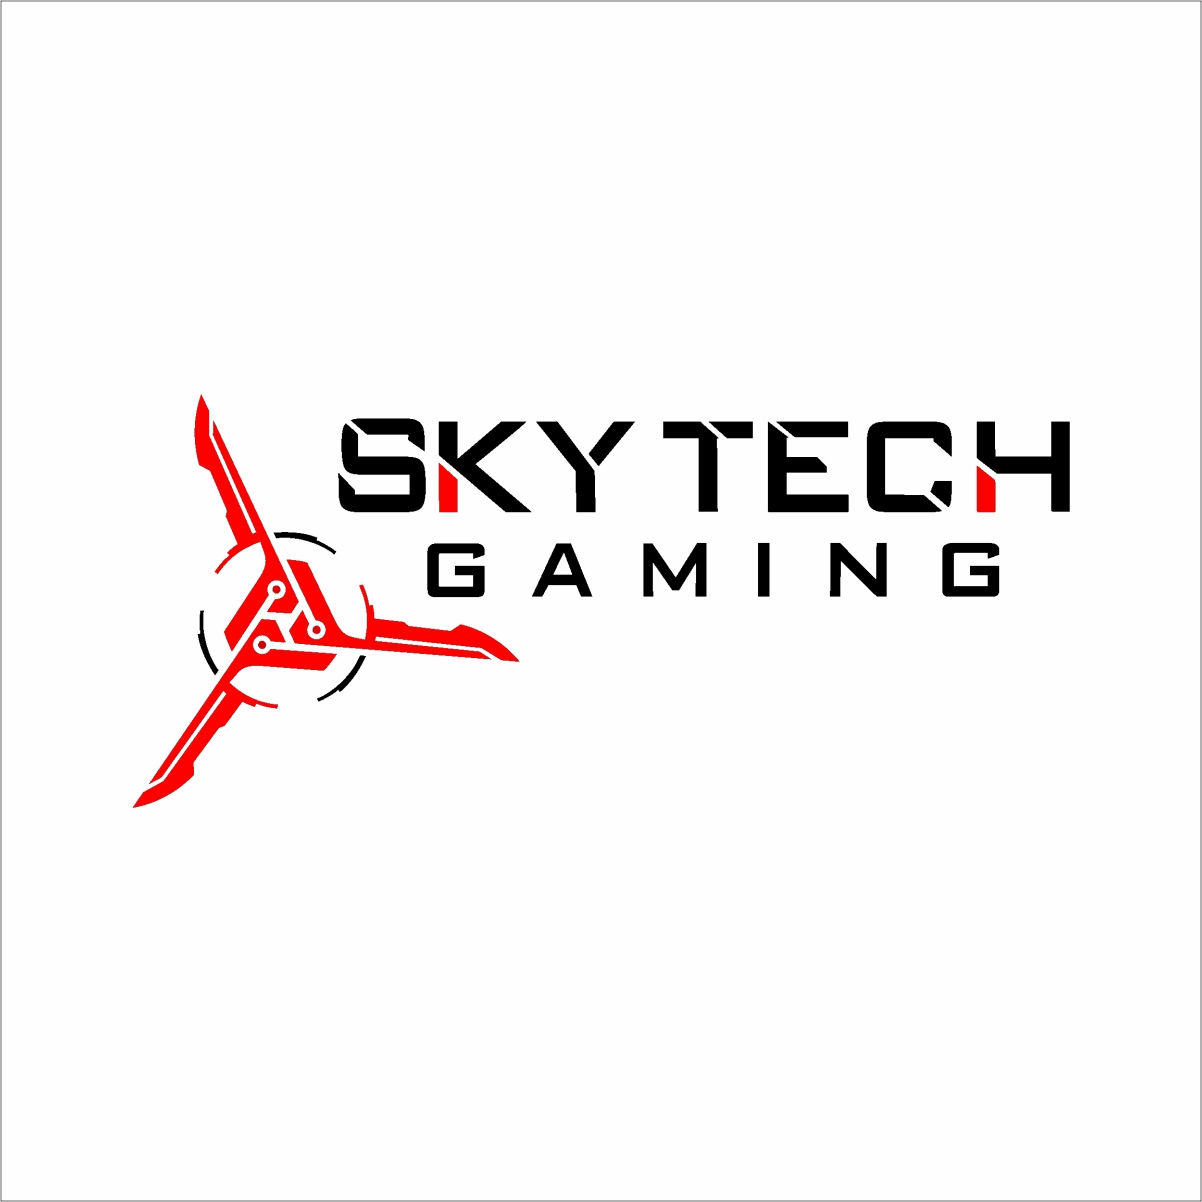 SkyTech